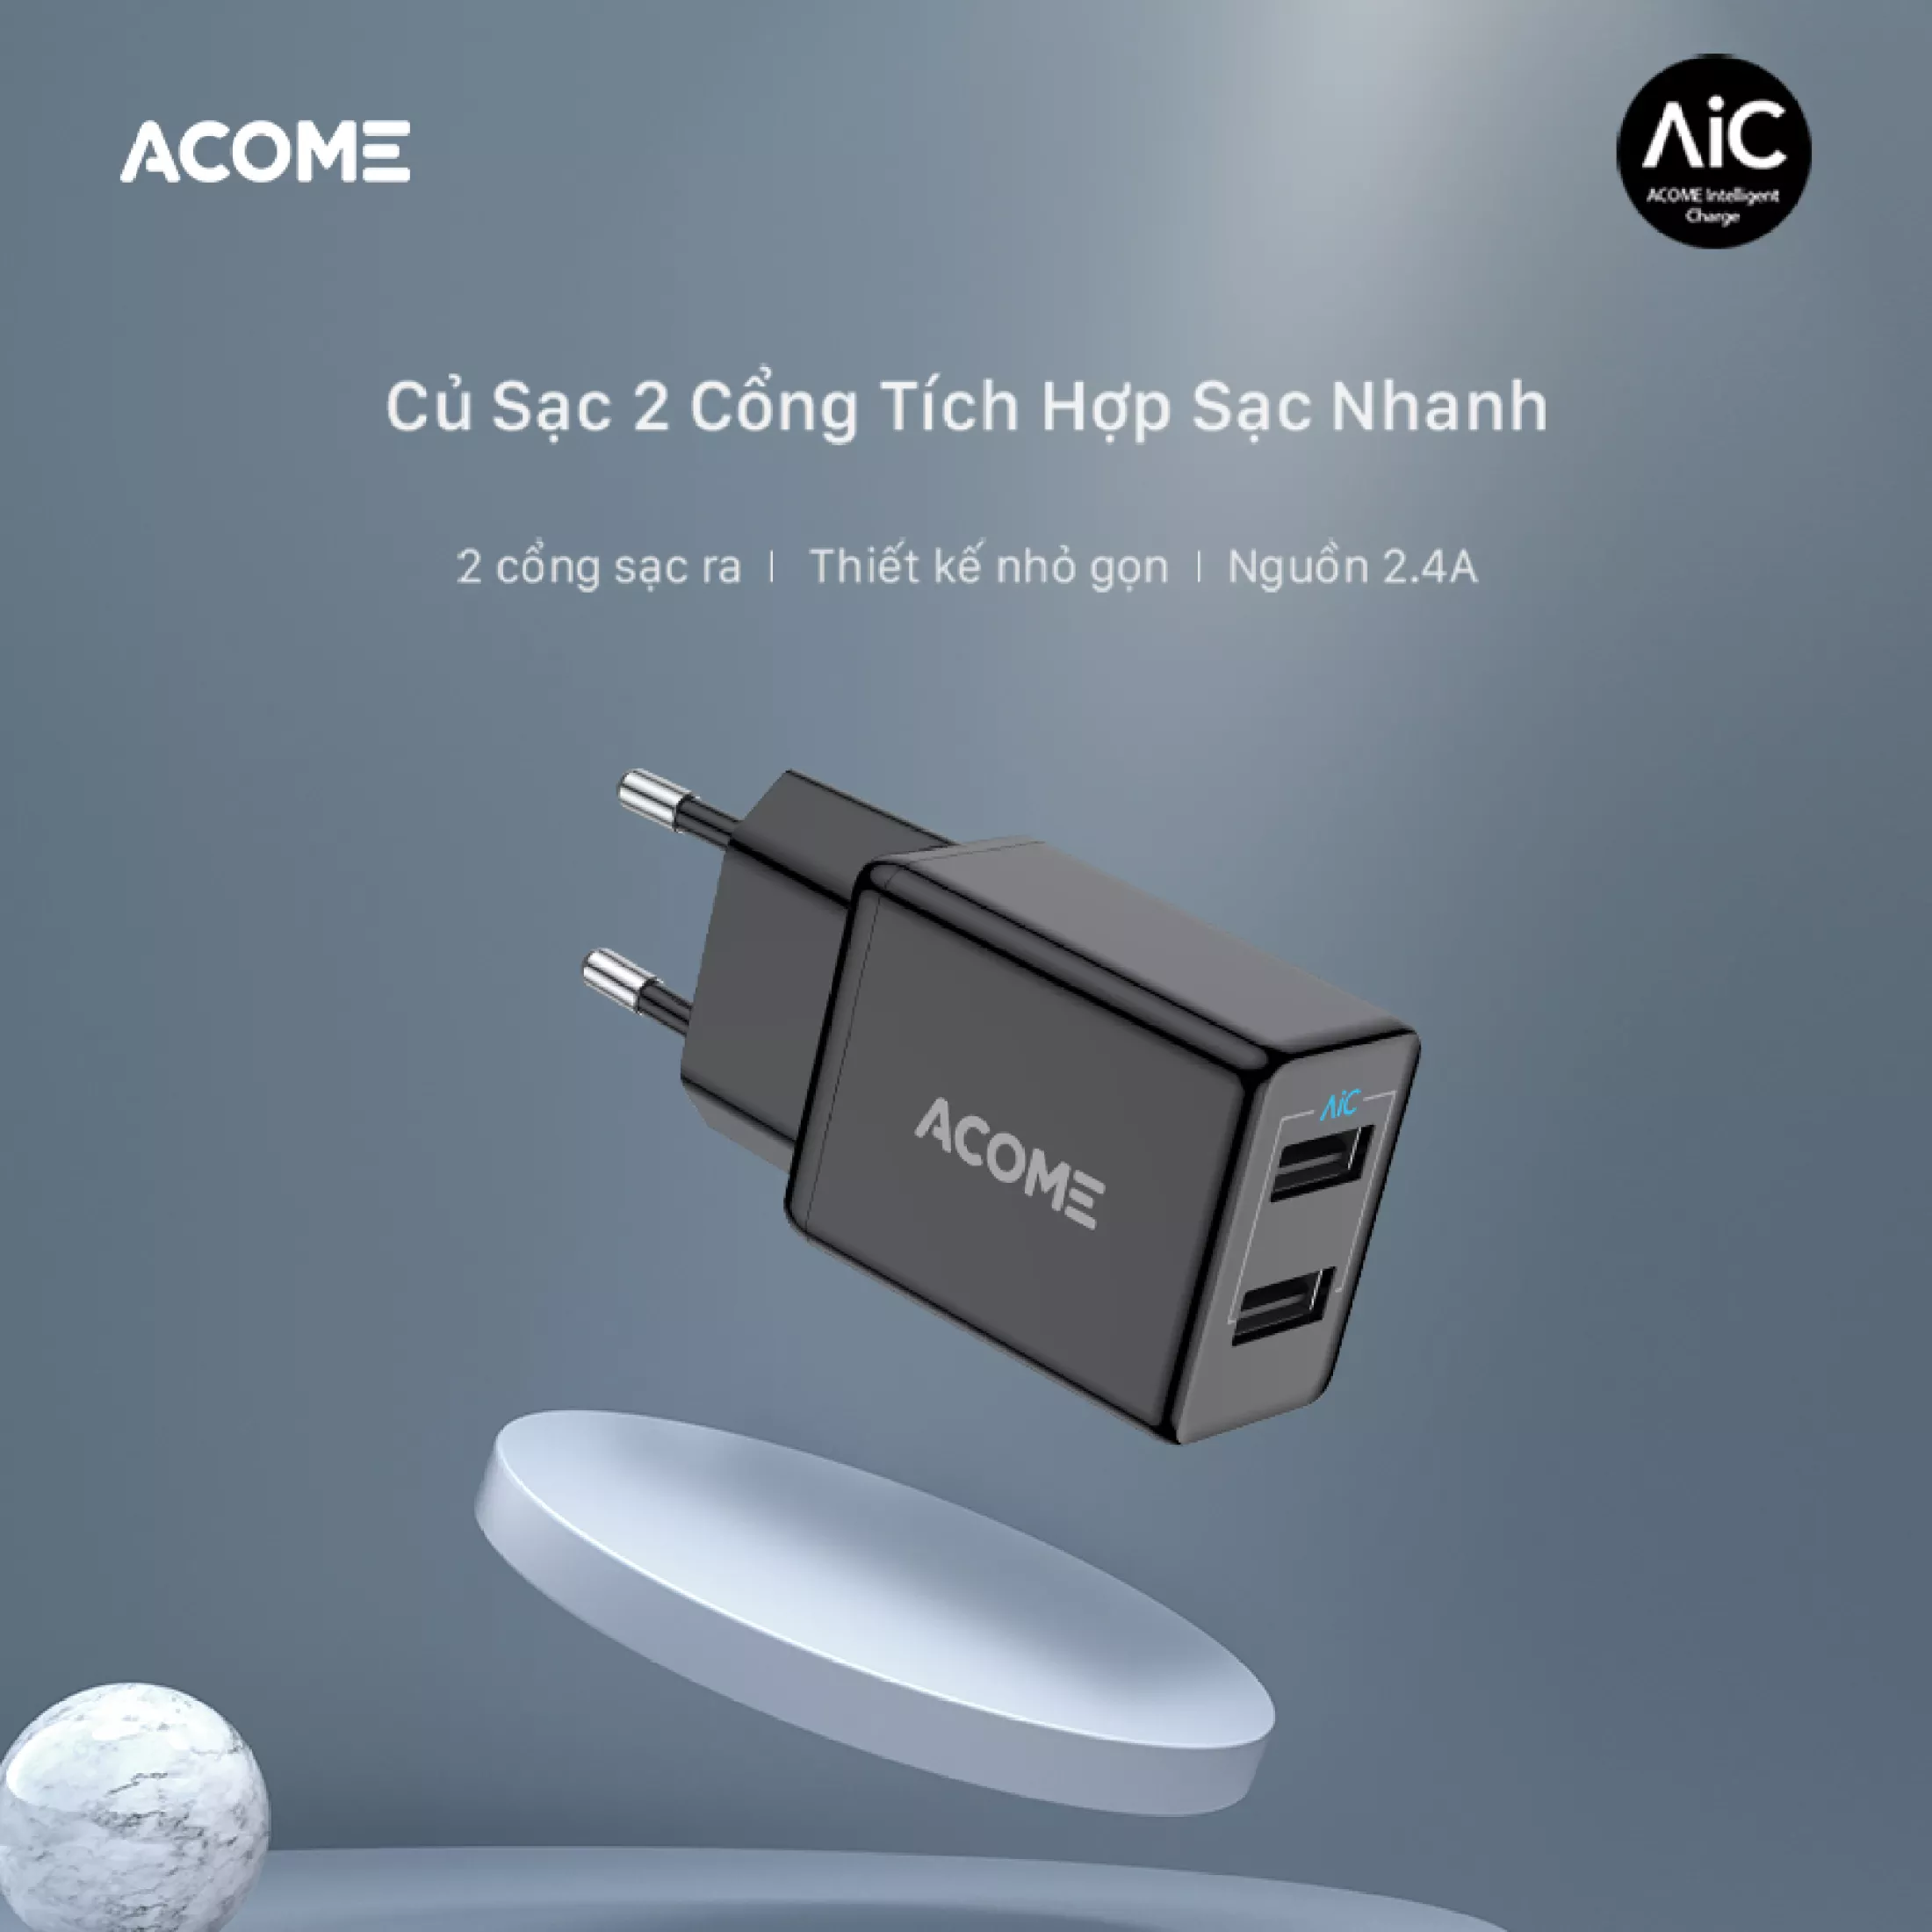 Cốc sạc ACOME AC03 Cho Di Động/Điện Thoại/Máy Tính Bảng Có 2 Cổng USB Sạc Nhanh 2.4A - Hàng Chính Hãng